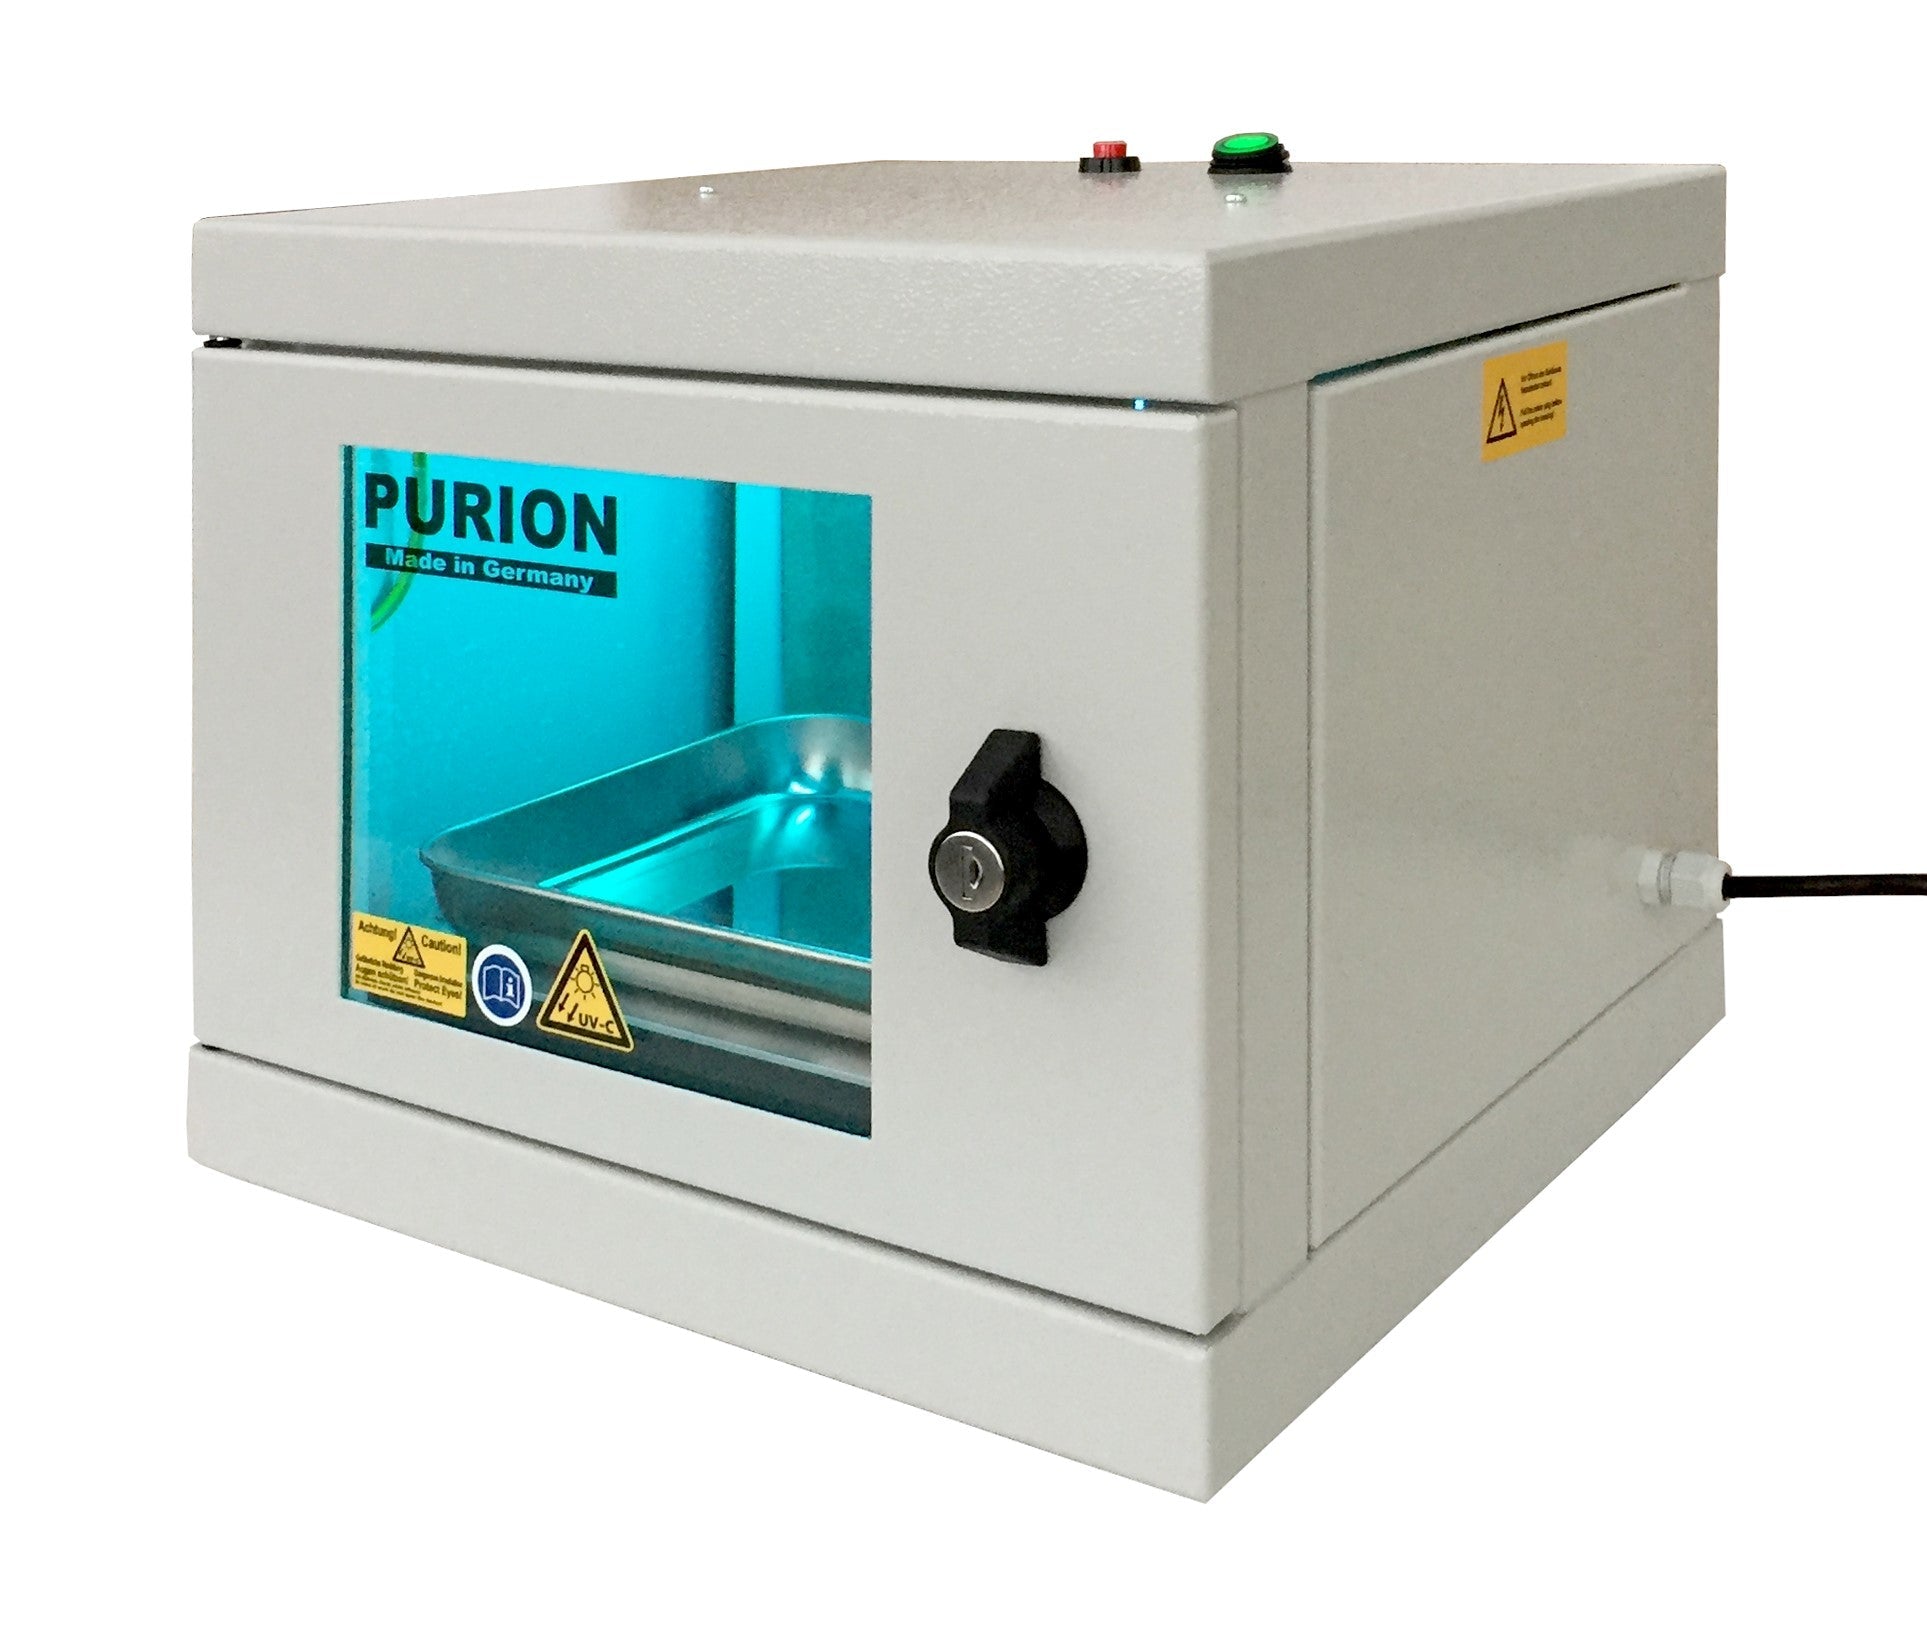 Eine kleine PURION UVC Box Small Extra-Maschine mit dem Wort PURION darauf, konzipiert für Hygiene- und Desinfektionszwecke.